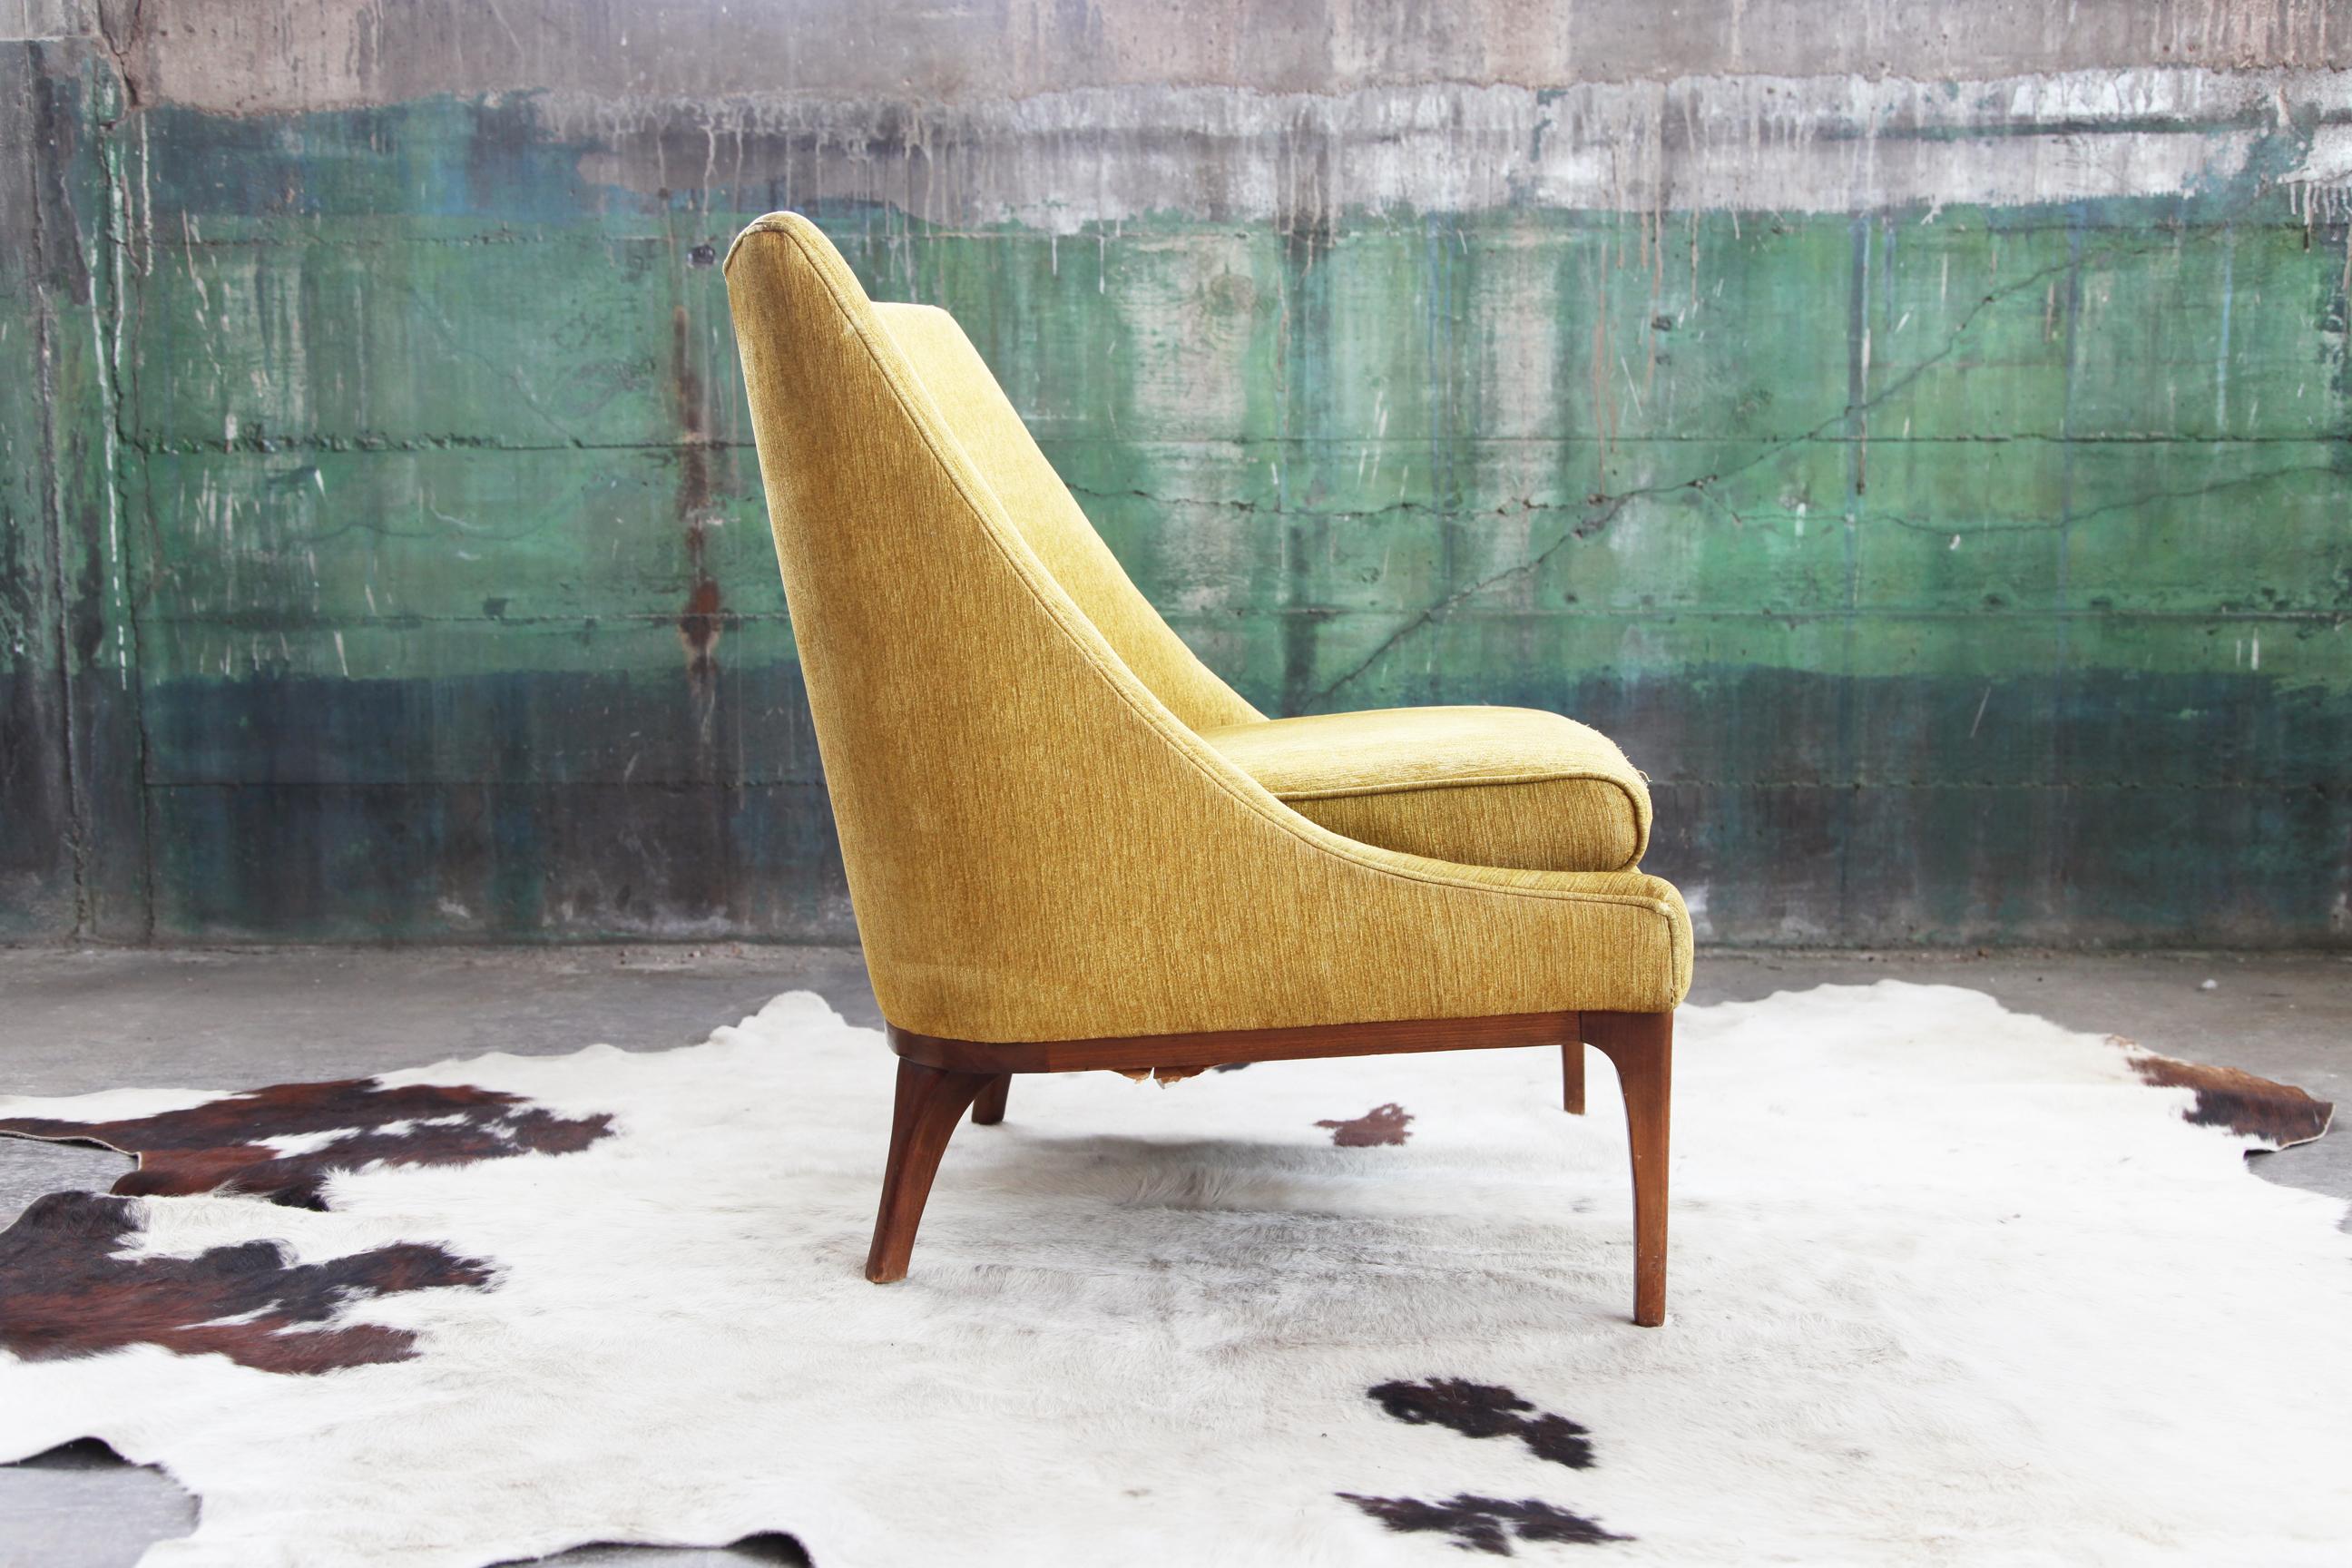 Une belle chaise classique de style mid-century, fabriquée aux États-Unis, avec une belle silhouette scandinave. La chaise est tapissée d'un velours jaune moutarde orange de haute qualité avec un coussin d'assise réversible.

Cette chaise faisait